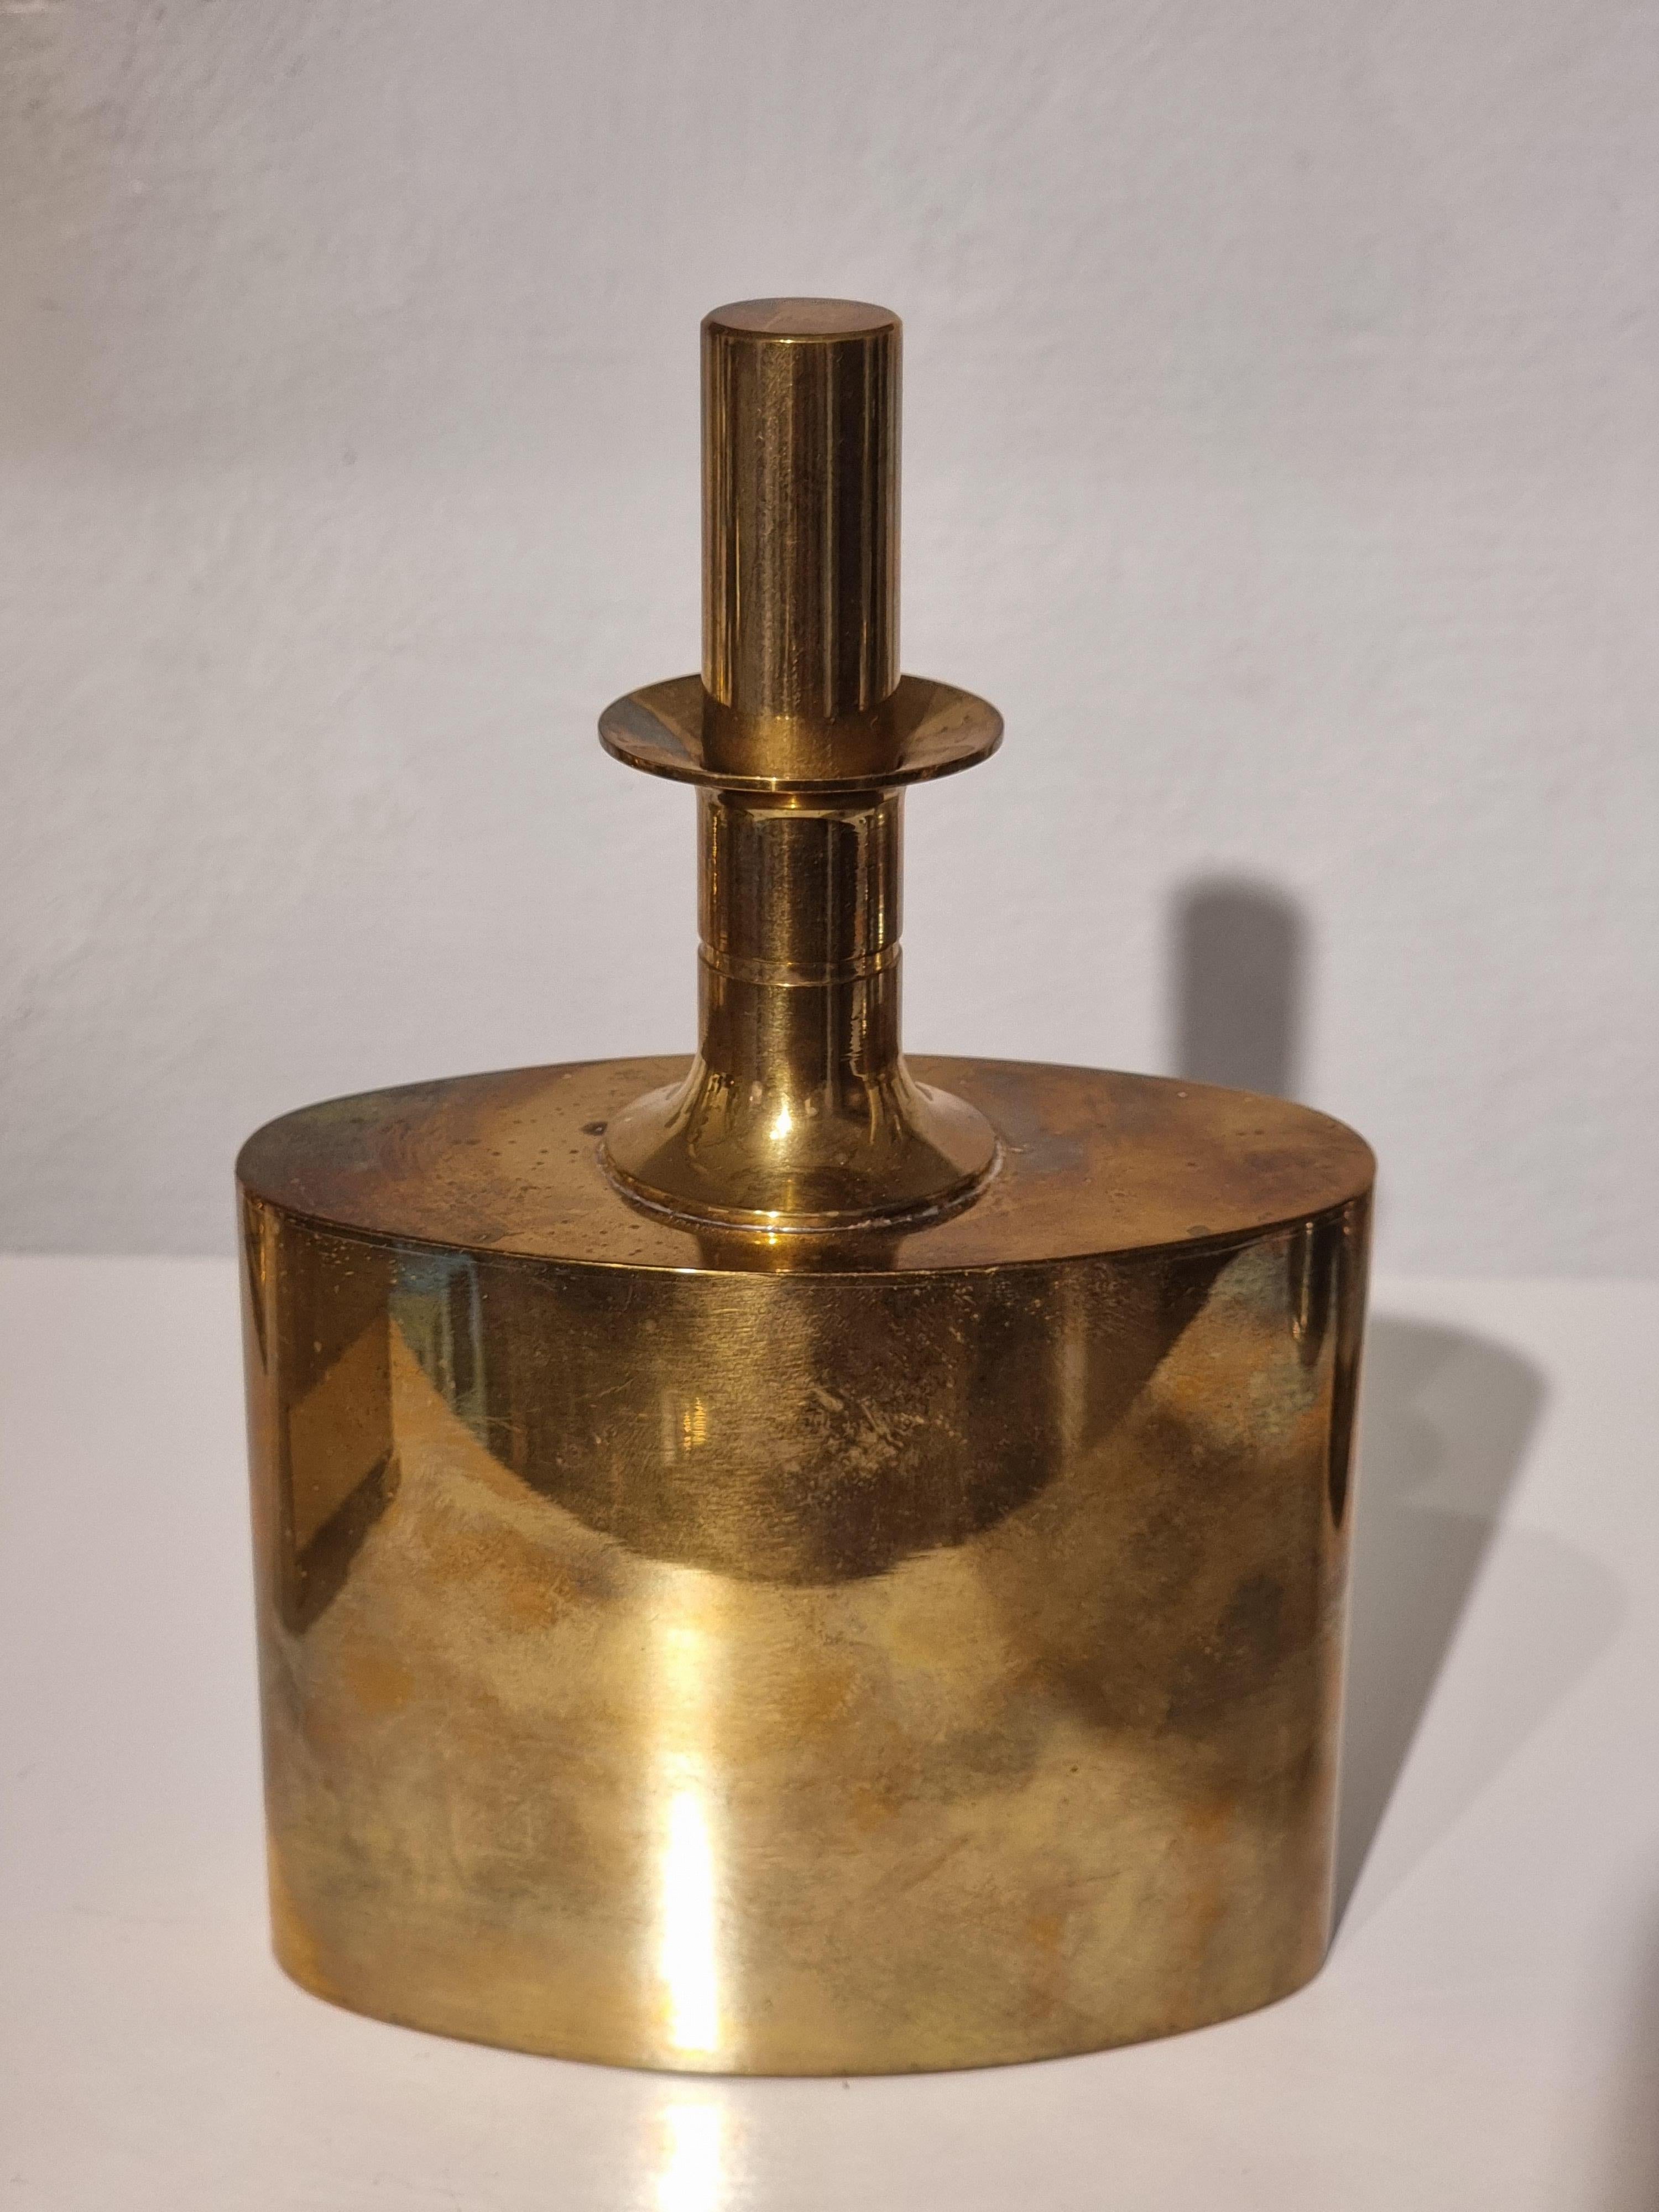 Vergoldete Messingflasche mit Stopfen von Pierre Forssell für Skultuna Bruk, Schweden, Mitte 1900. 

Skultuna Bruk wurde im Jahr 1607 gegründet. Diese Flasche ist eines der ikonischsten Werke von Pierre Forssell und trägt seine Handschrift. 
